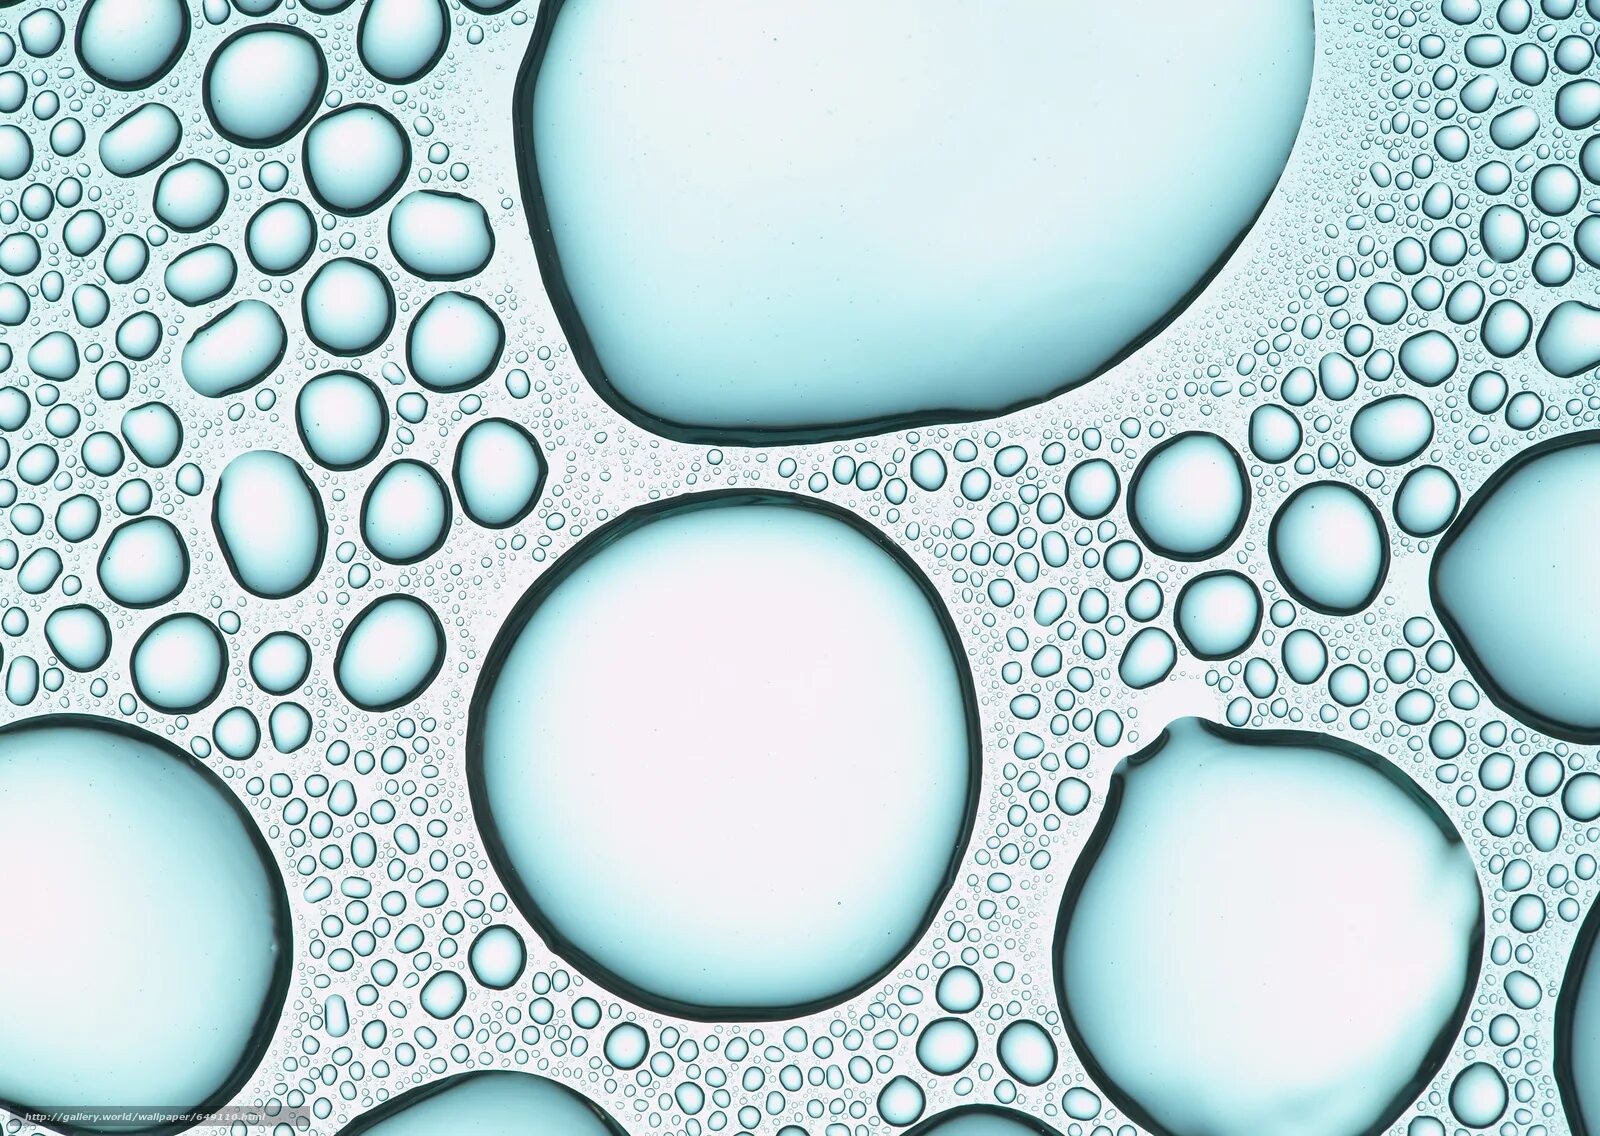 Пузыри текстура. Капли текстура. Графическая текстура пузырей. Обои пузырьки. Виниловые обои пузырями